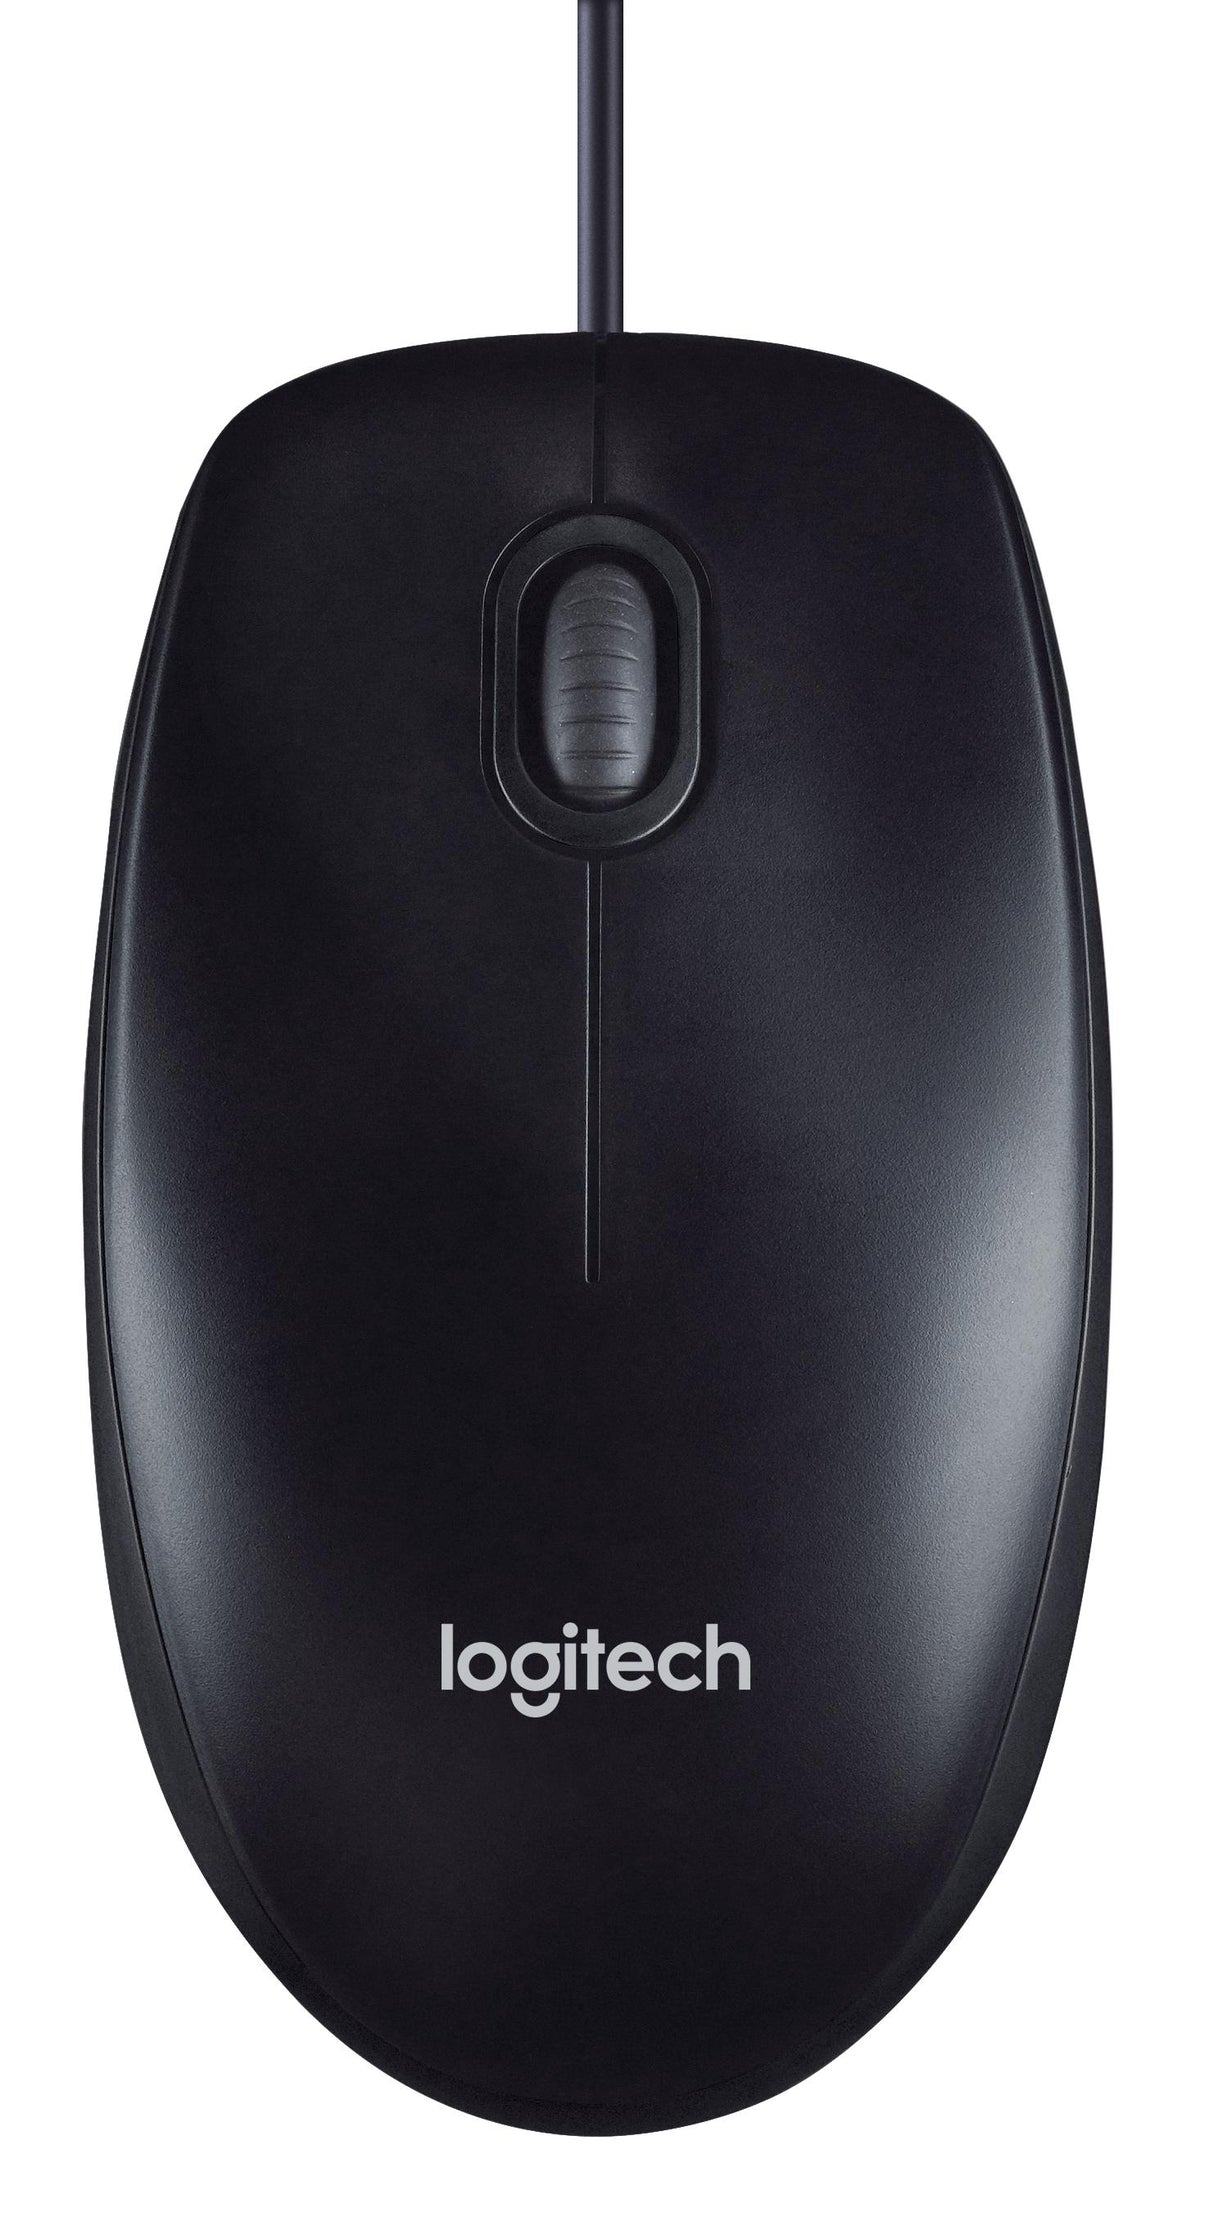 Logitech USB Mouse M90 black